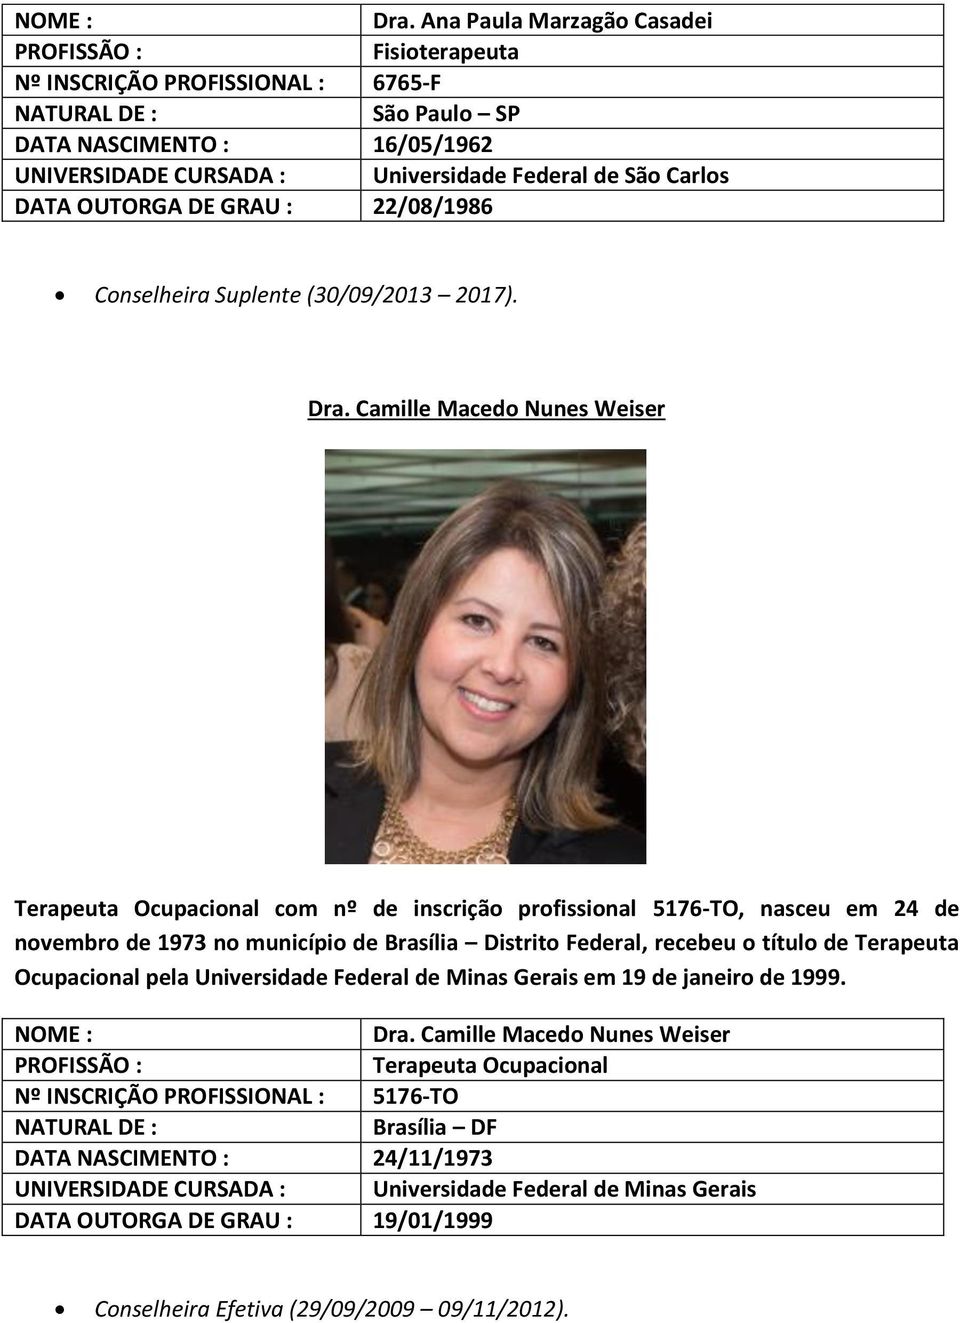 Camille Macedo Nunes Weiser Terapeuta Ocupacional com nº de inscrição profissional 5176-TO, nasceu em 24 de novembro de 1973 no município de Brasília Distrito Federal, recebeu o título de Terapeuta